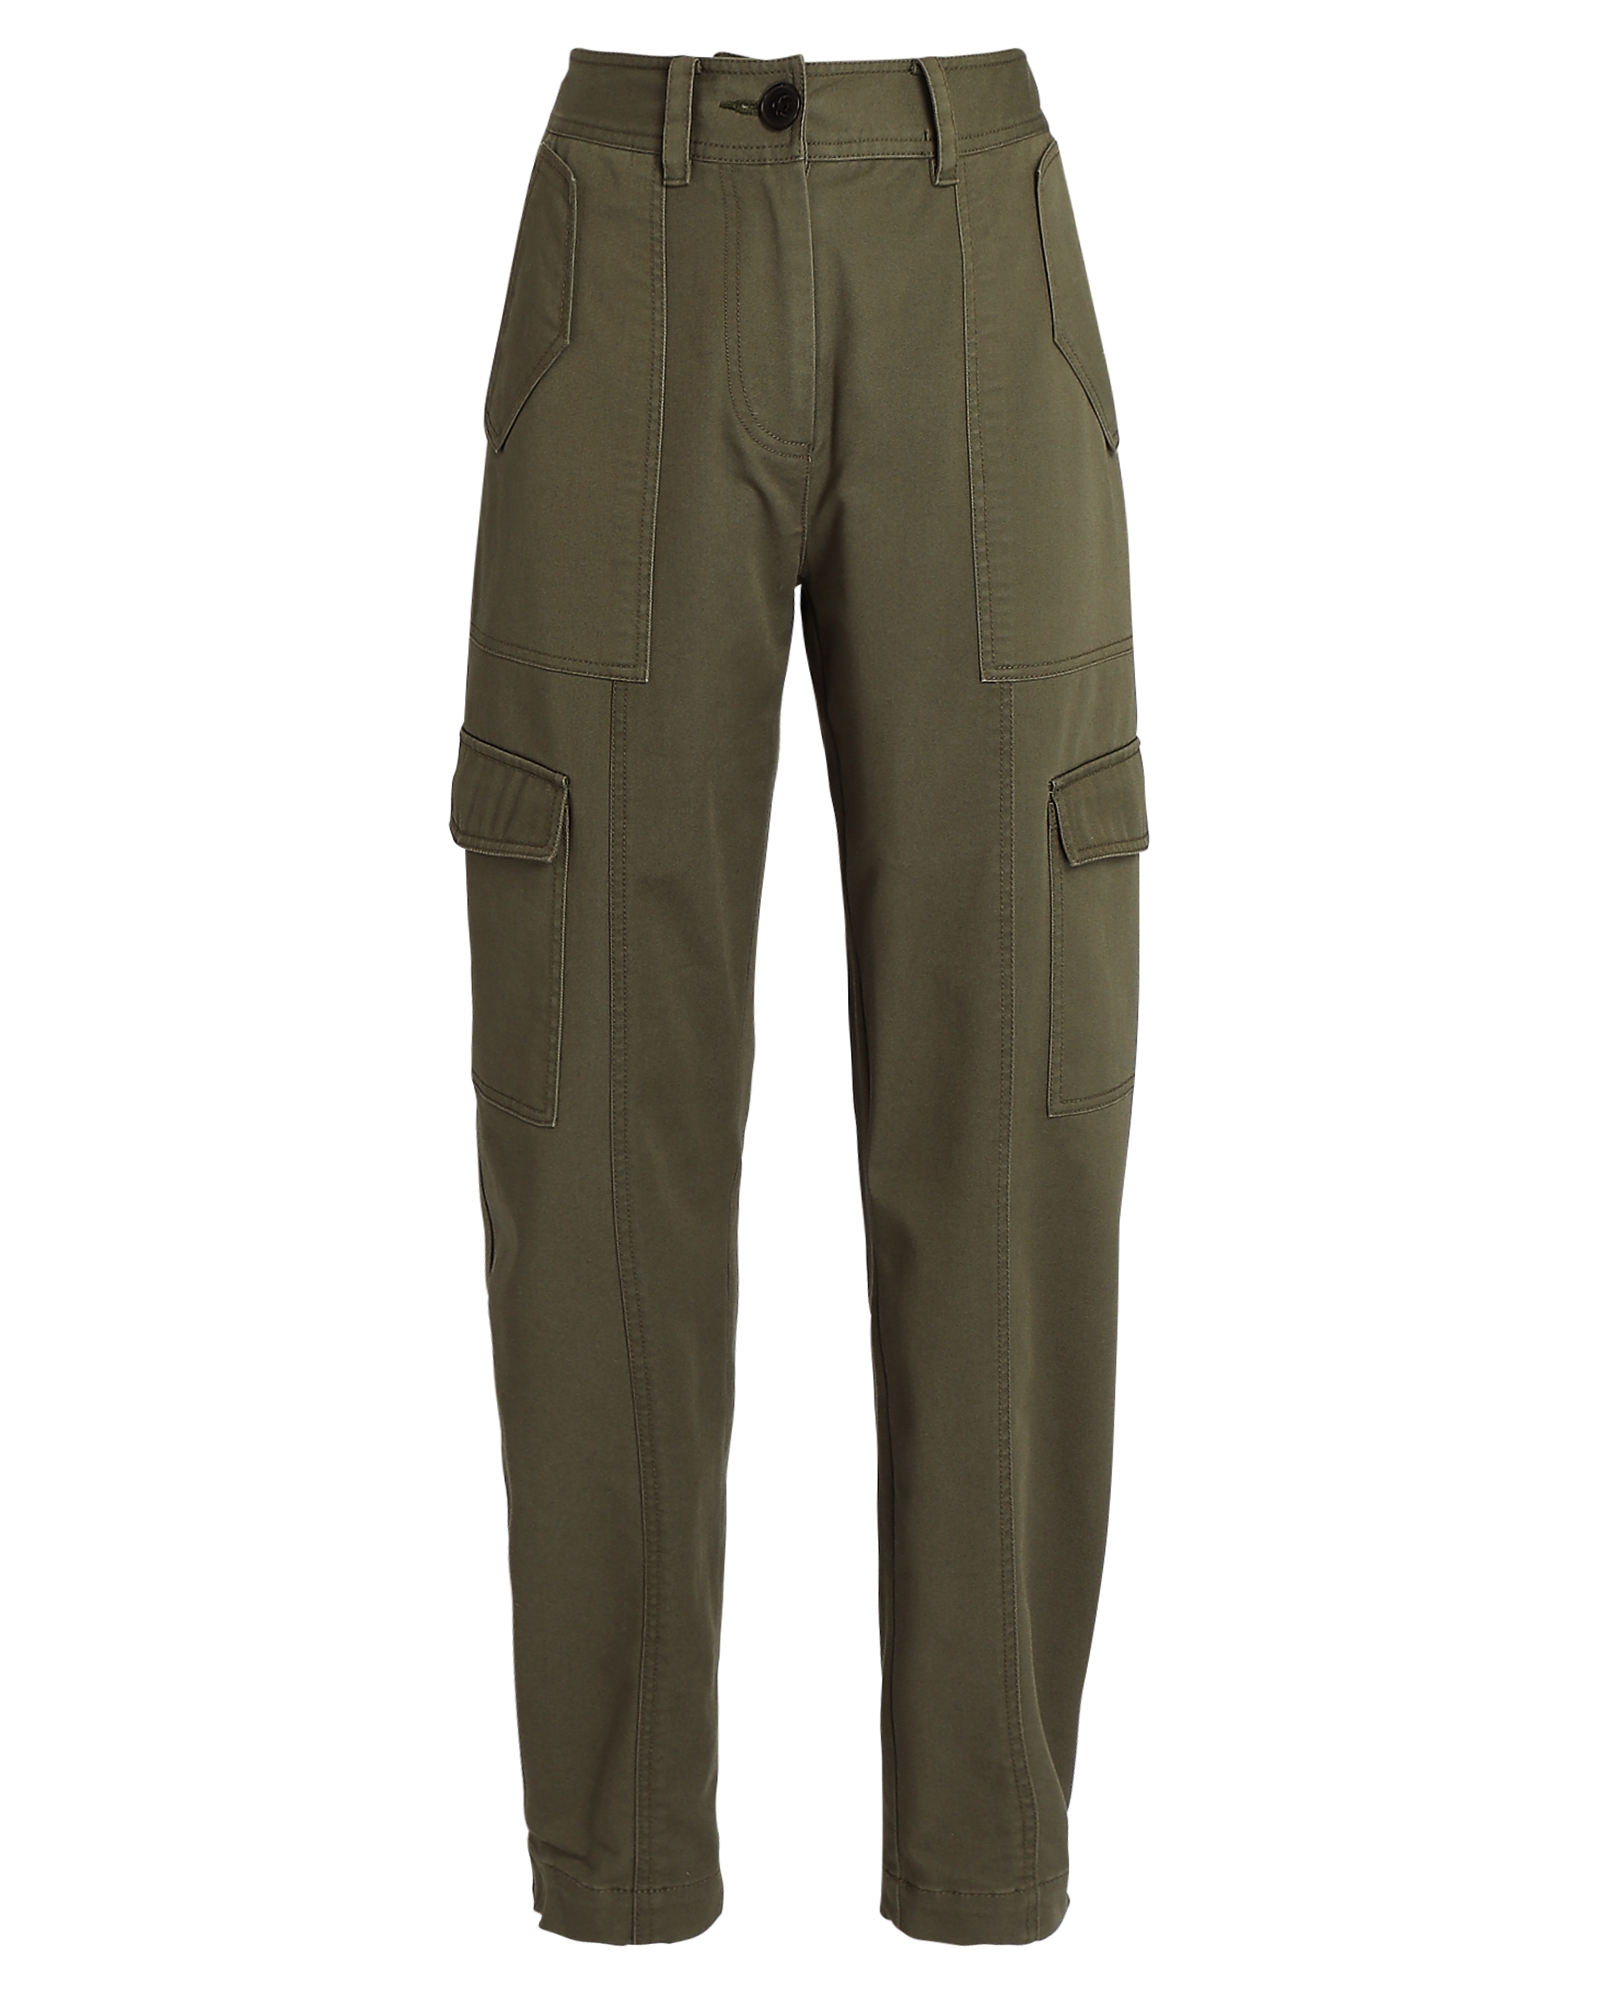 Derek Lam 10 Crosby Elian Utility Pants in Green | INTERMIX®